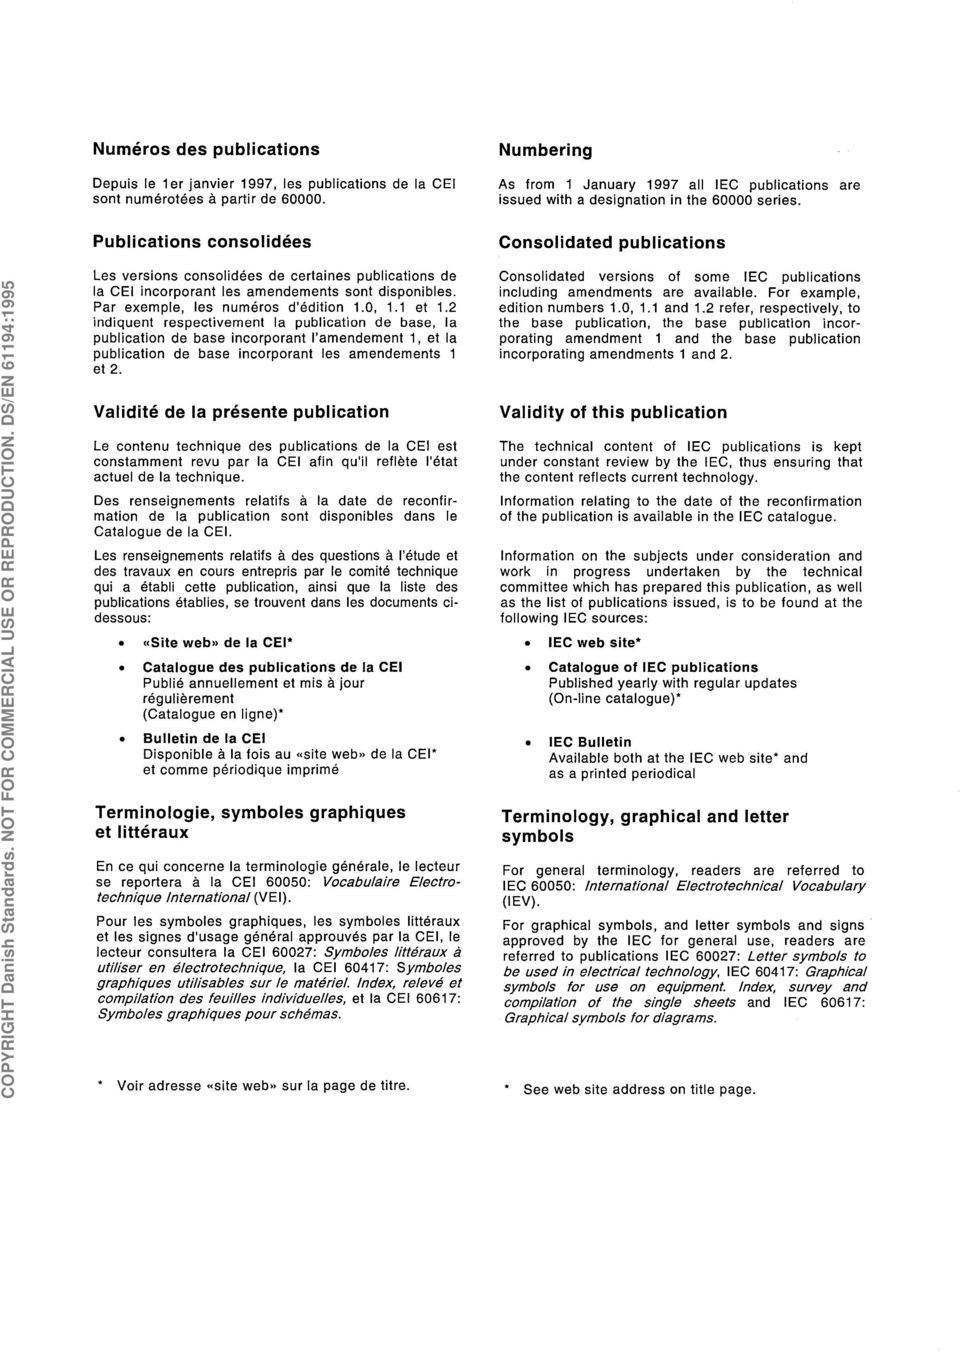 NOT FOR COMMERCIAL USE OR REPRODUCTION. DS/EN 61194:1995 Les versions consolidées de certaines publications de la CEI incorporant les amendements sont disponibles.